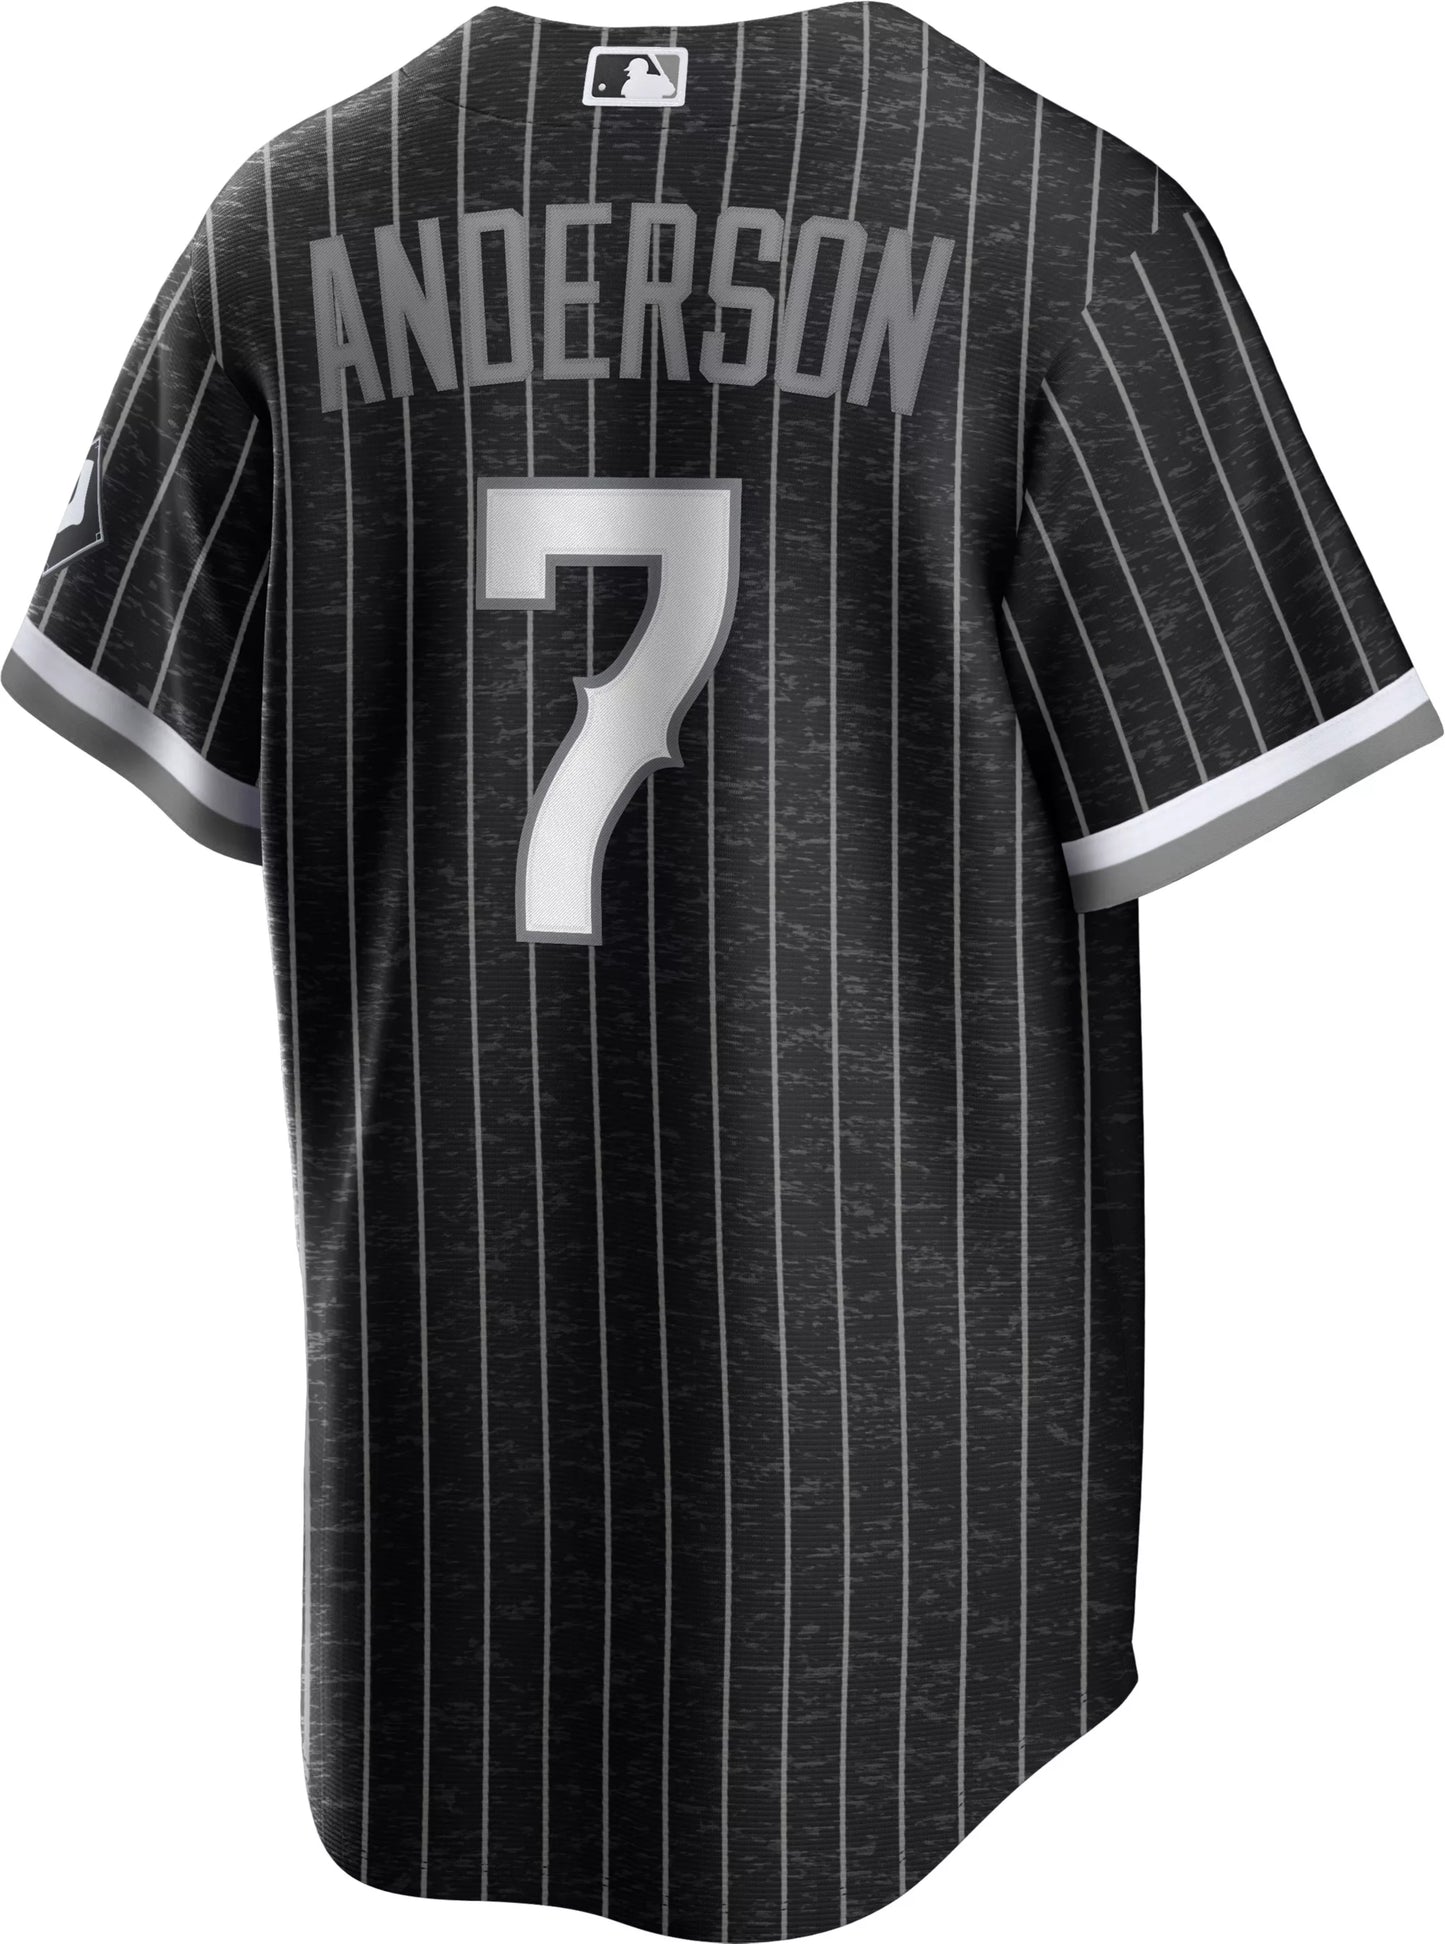 Men's Tim Anderson Chicago White Sox Nike Black City Connect Premium Stitch Replica Jersey